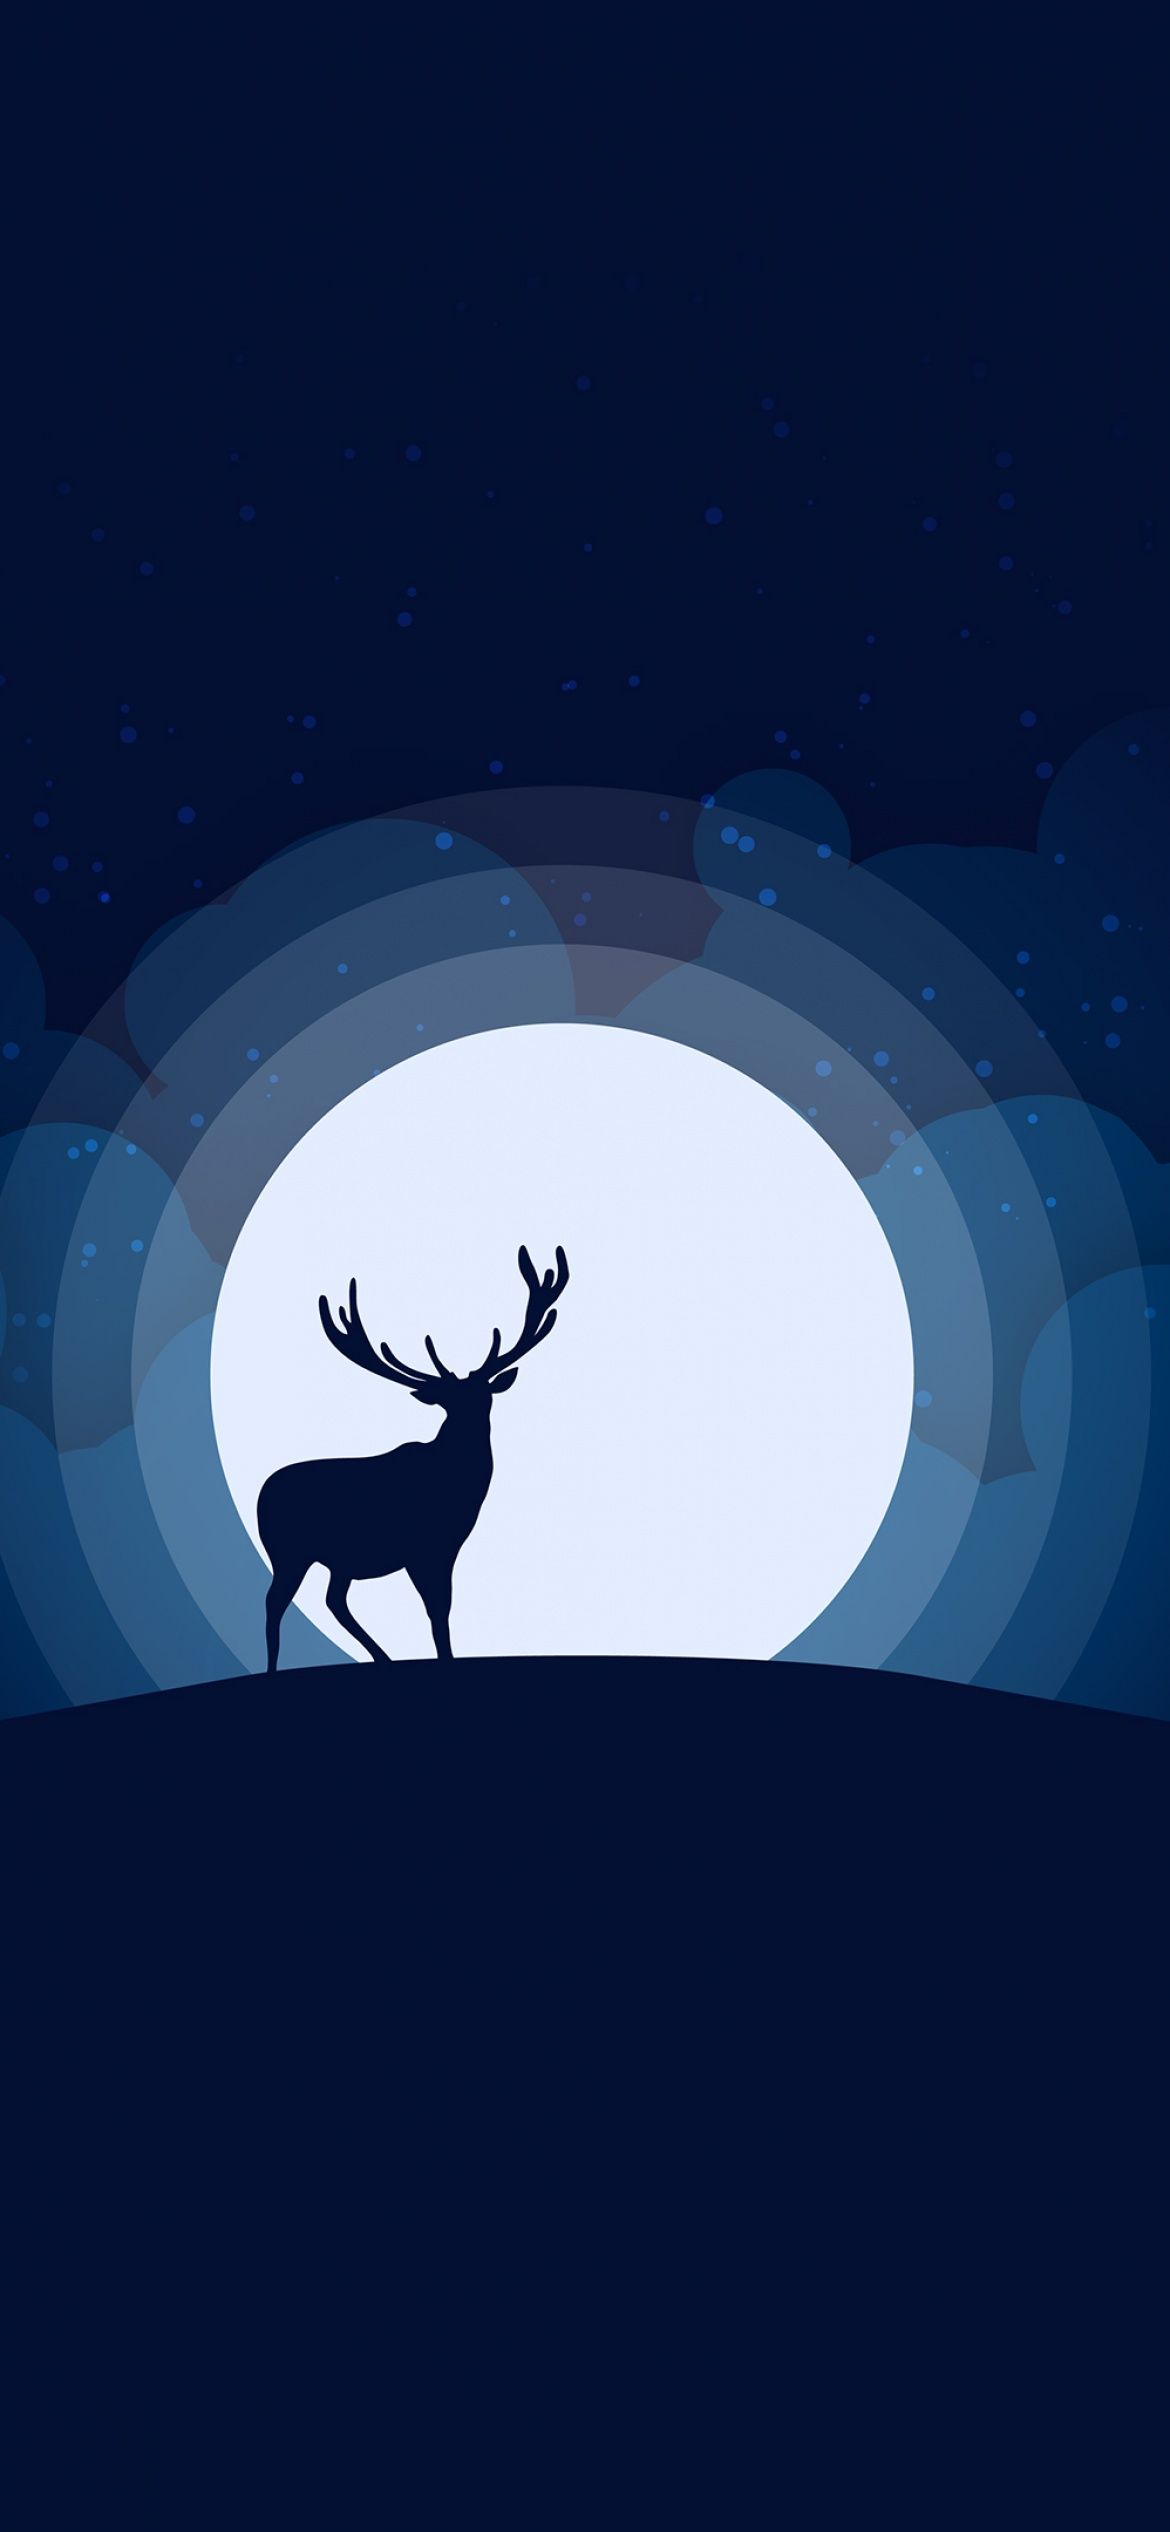 A deer is standing in the moonlight - Deer